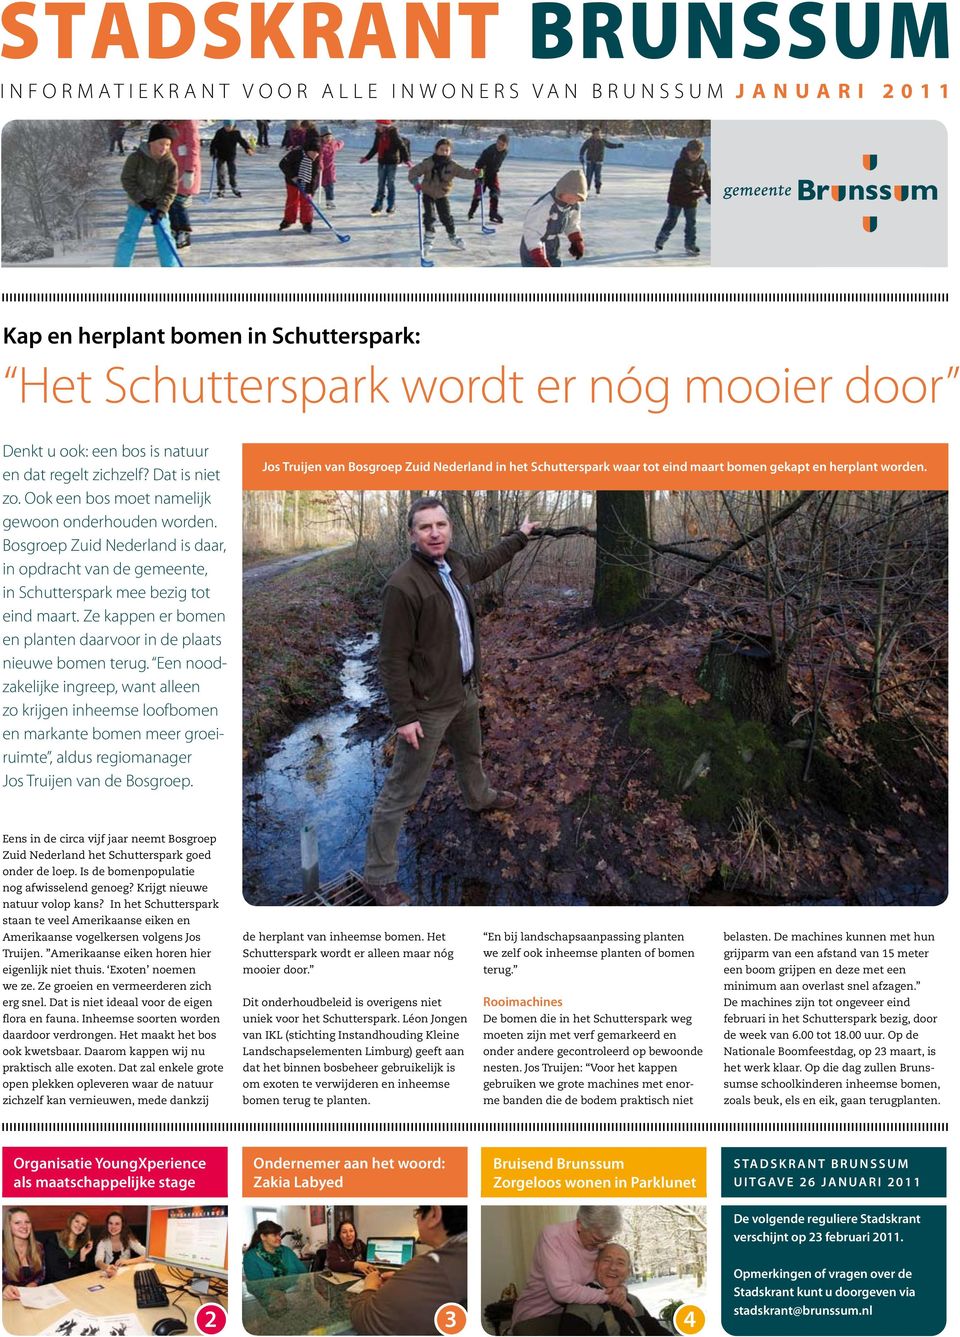 Bosgroep Zuid Nederland is daar, in opdracht van de gemeente, in Schutterspark mee bezig tot eind maart. Ze kappen er bomen en planten daarvoor in de plaats nieuwe bomen terug.